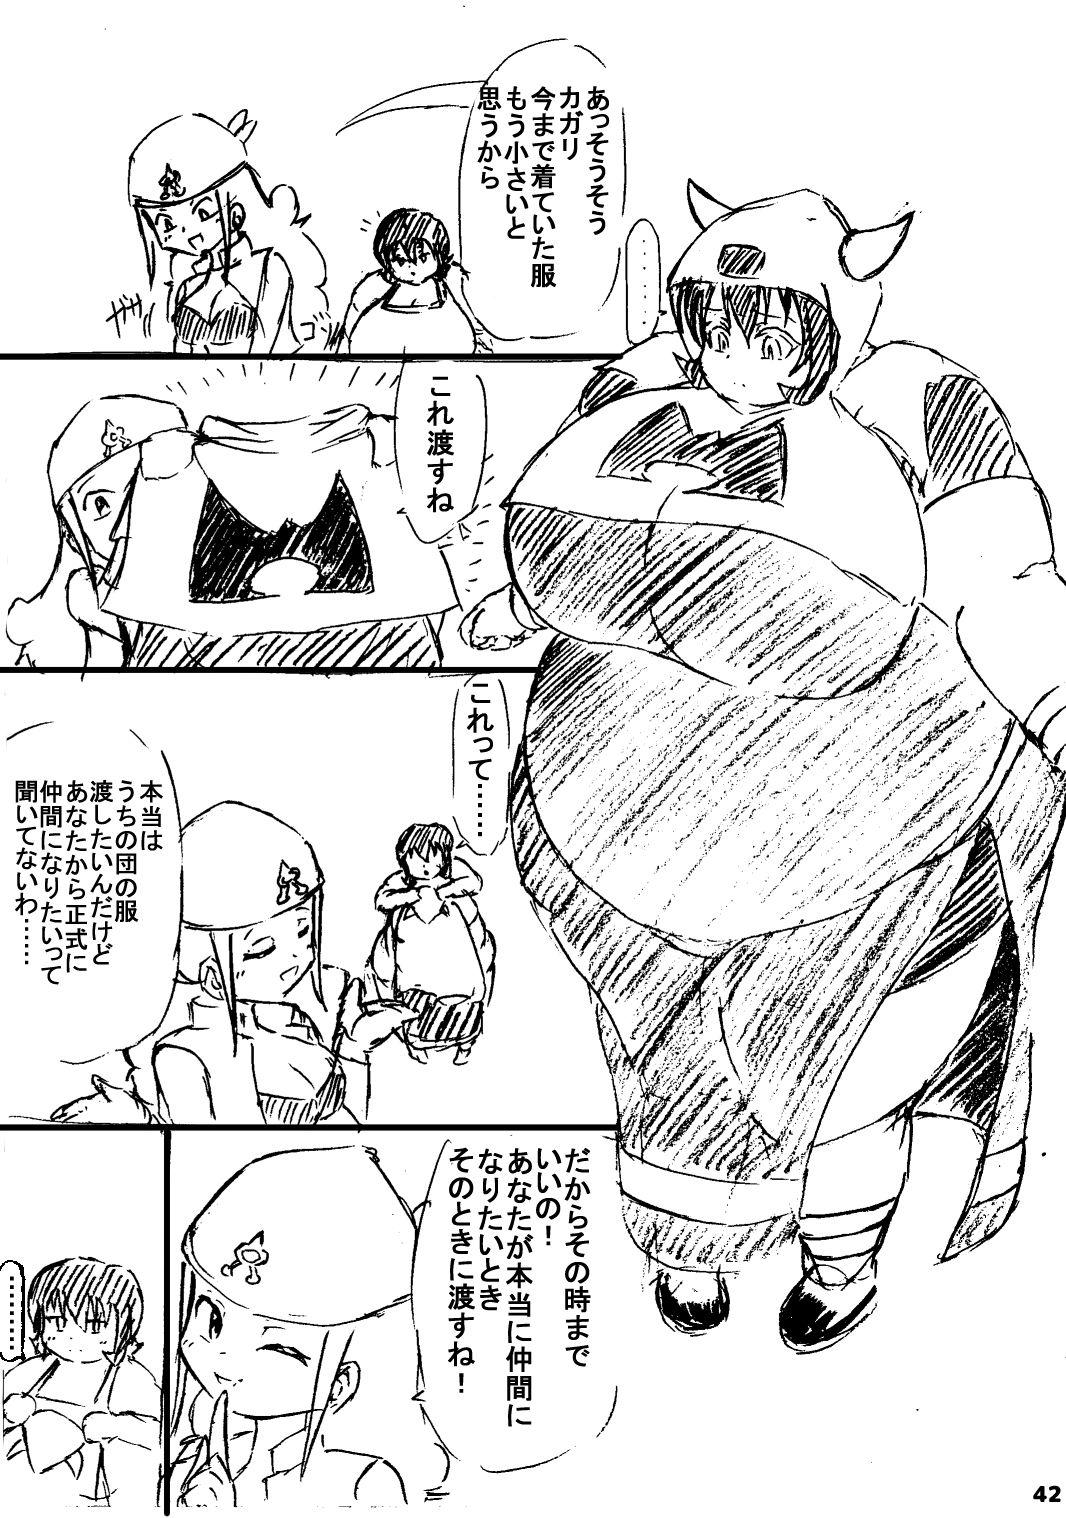 ポケスペカガリ肥満化漫画 40